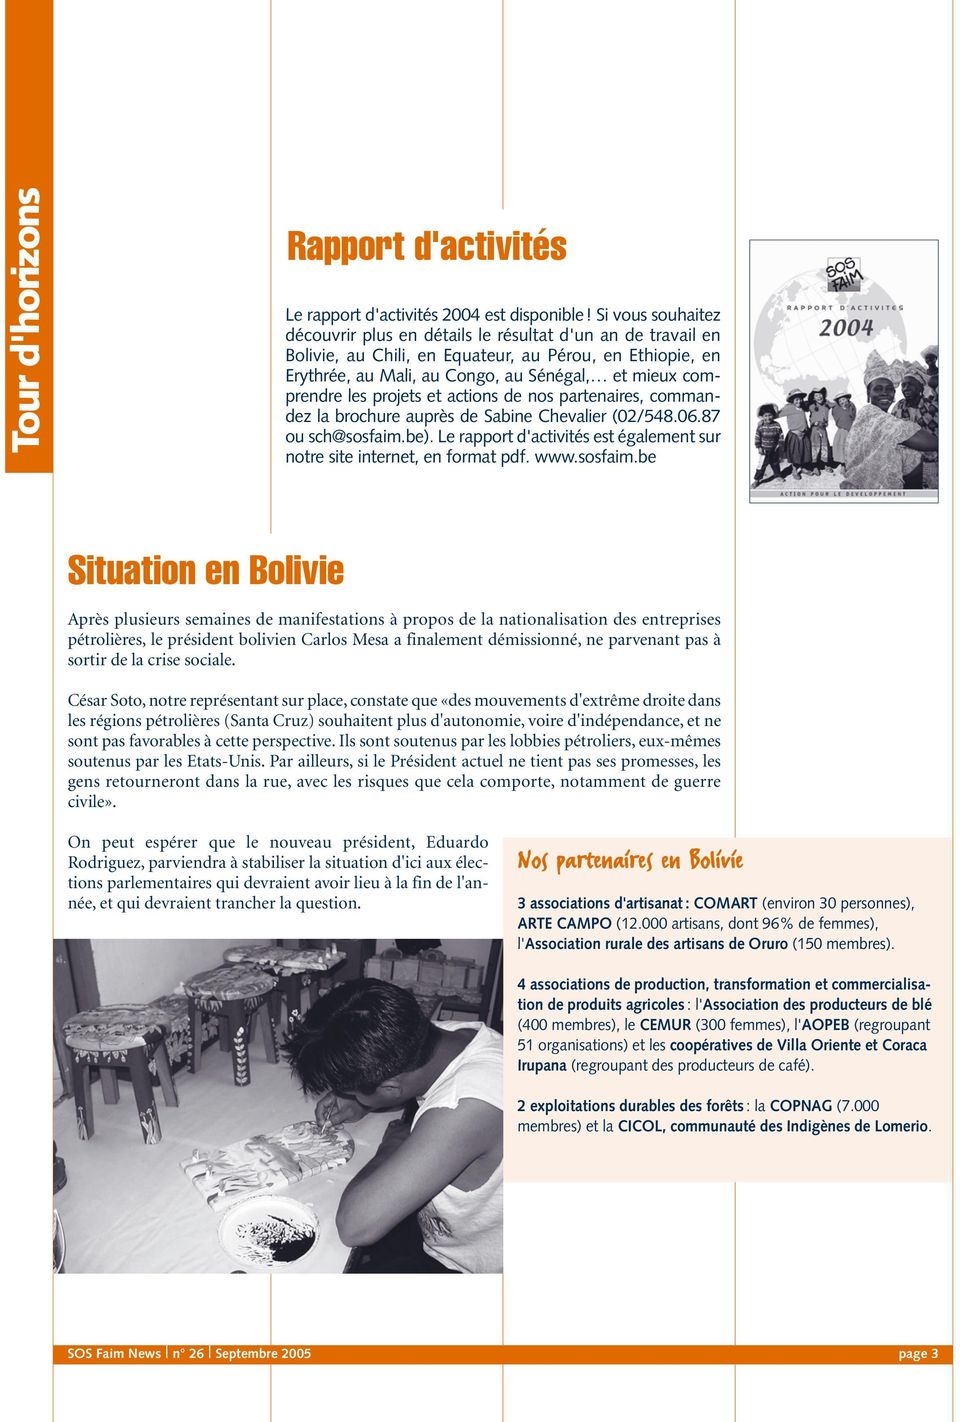 les projets et actions de nos partenaires, commandez la brochure auprès de Sabine Chevalier (02/548.06.87 ou sch@sosfaim.be).